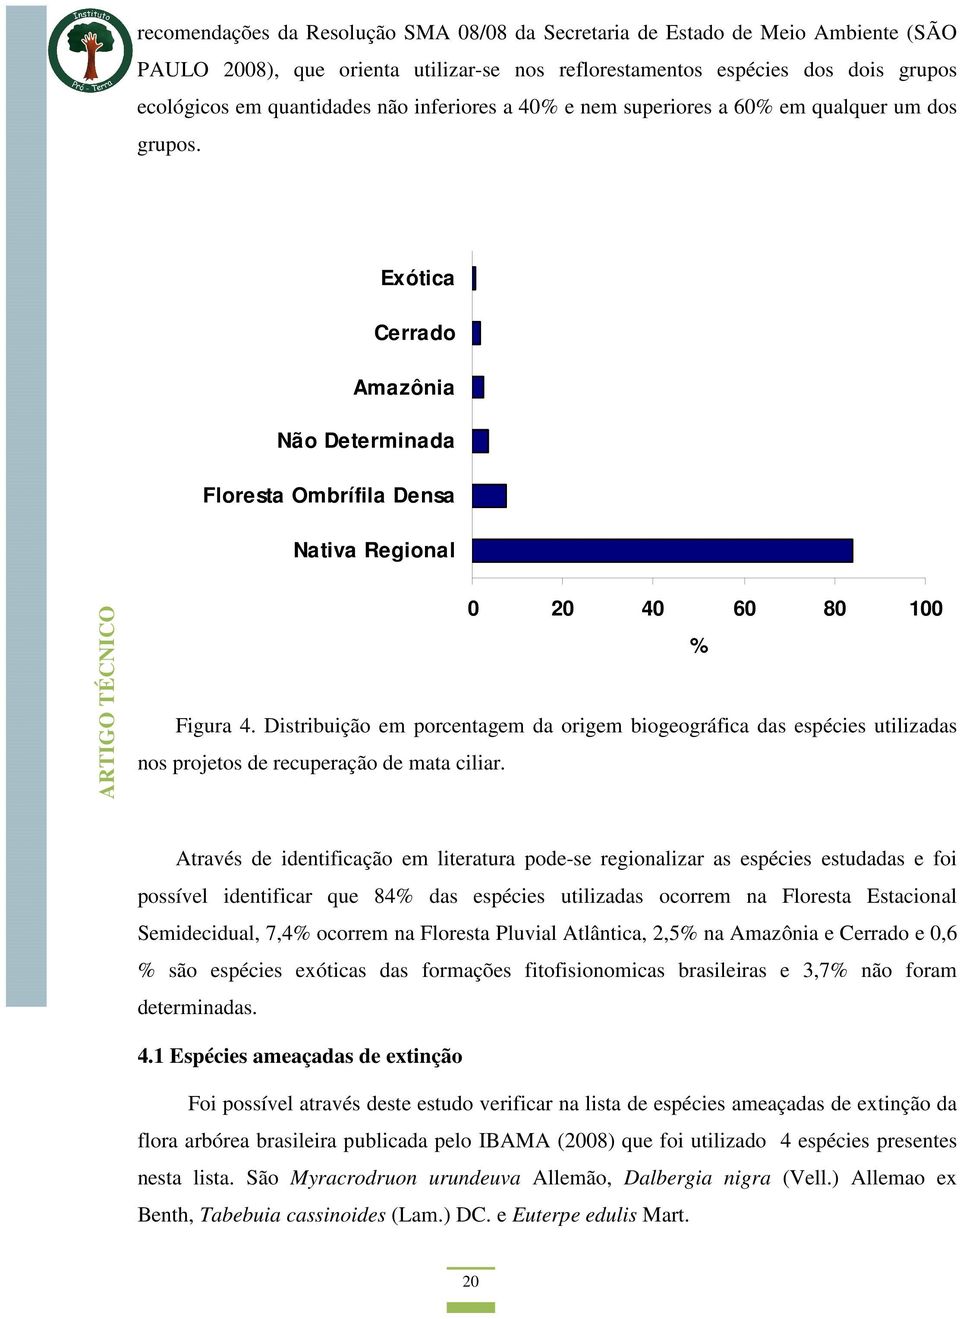 Distribuição em porcentagem da origem biogeográfica das espécies utilizadas nos projetos de recuperação de mata ciliar.